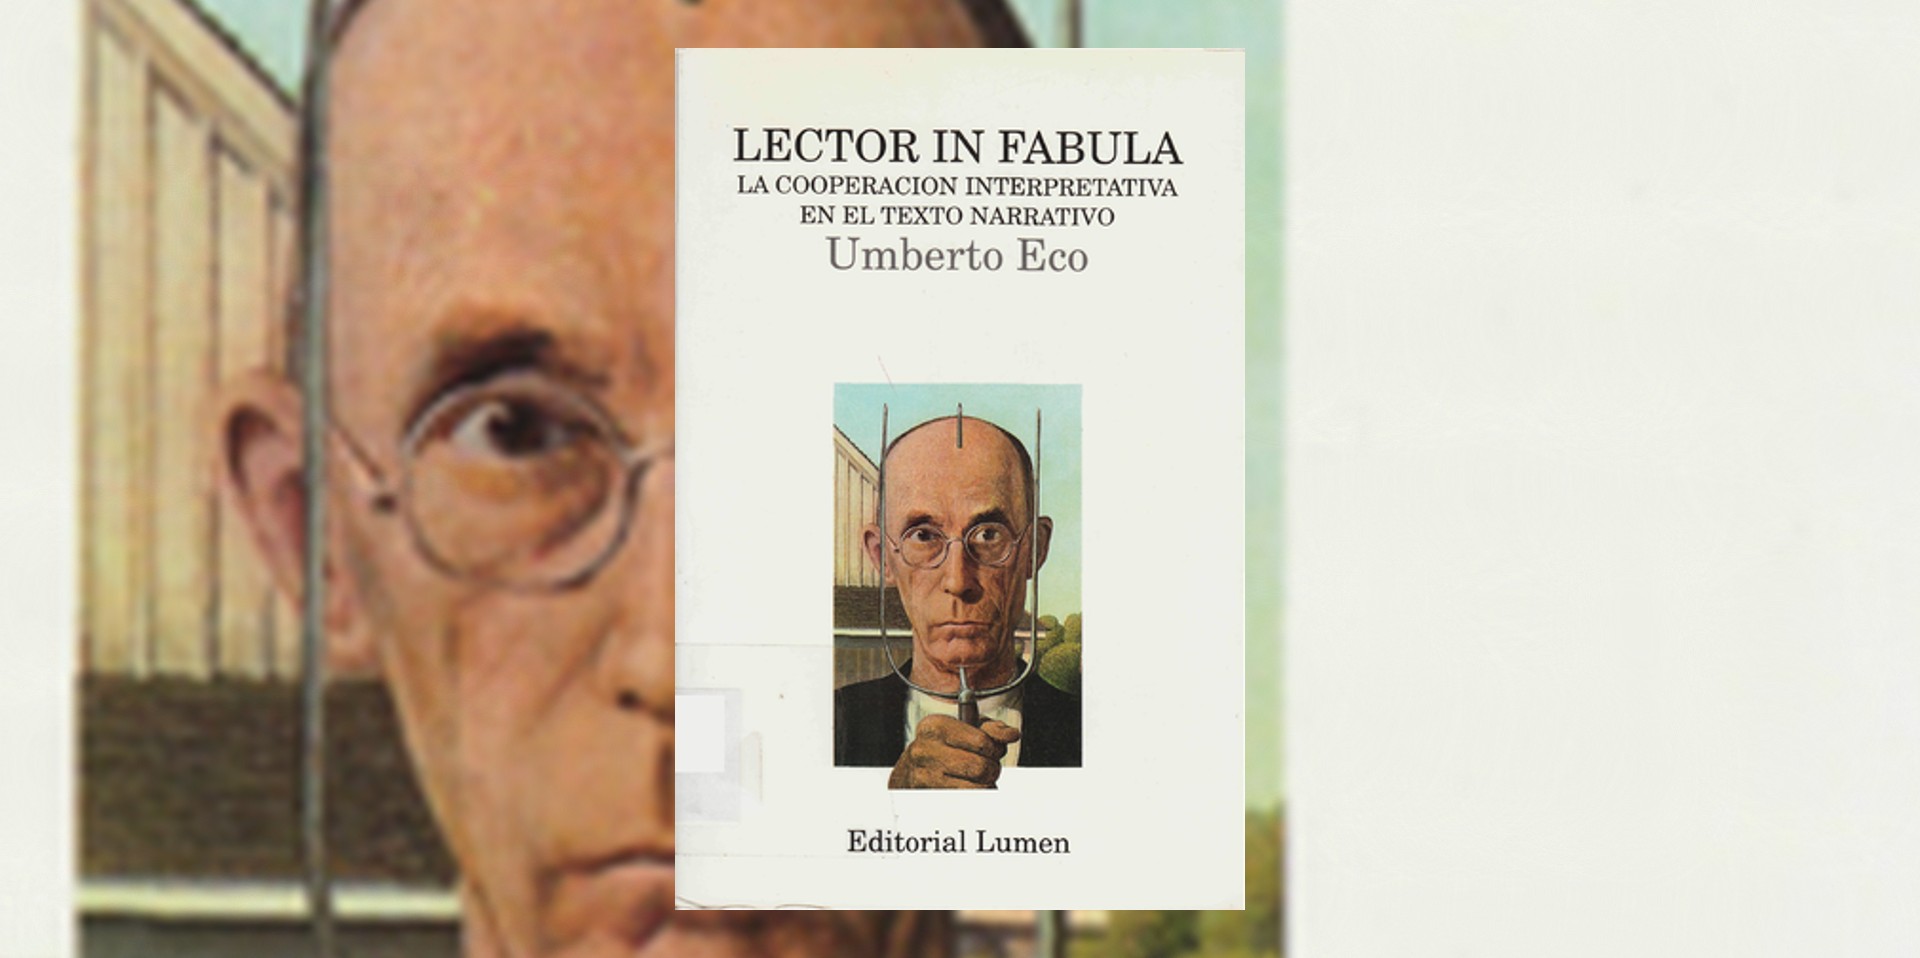 Portada del libro "Lector in fabula", de Umberto Eco.